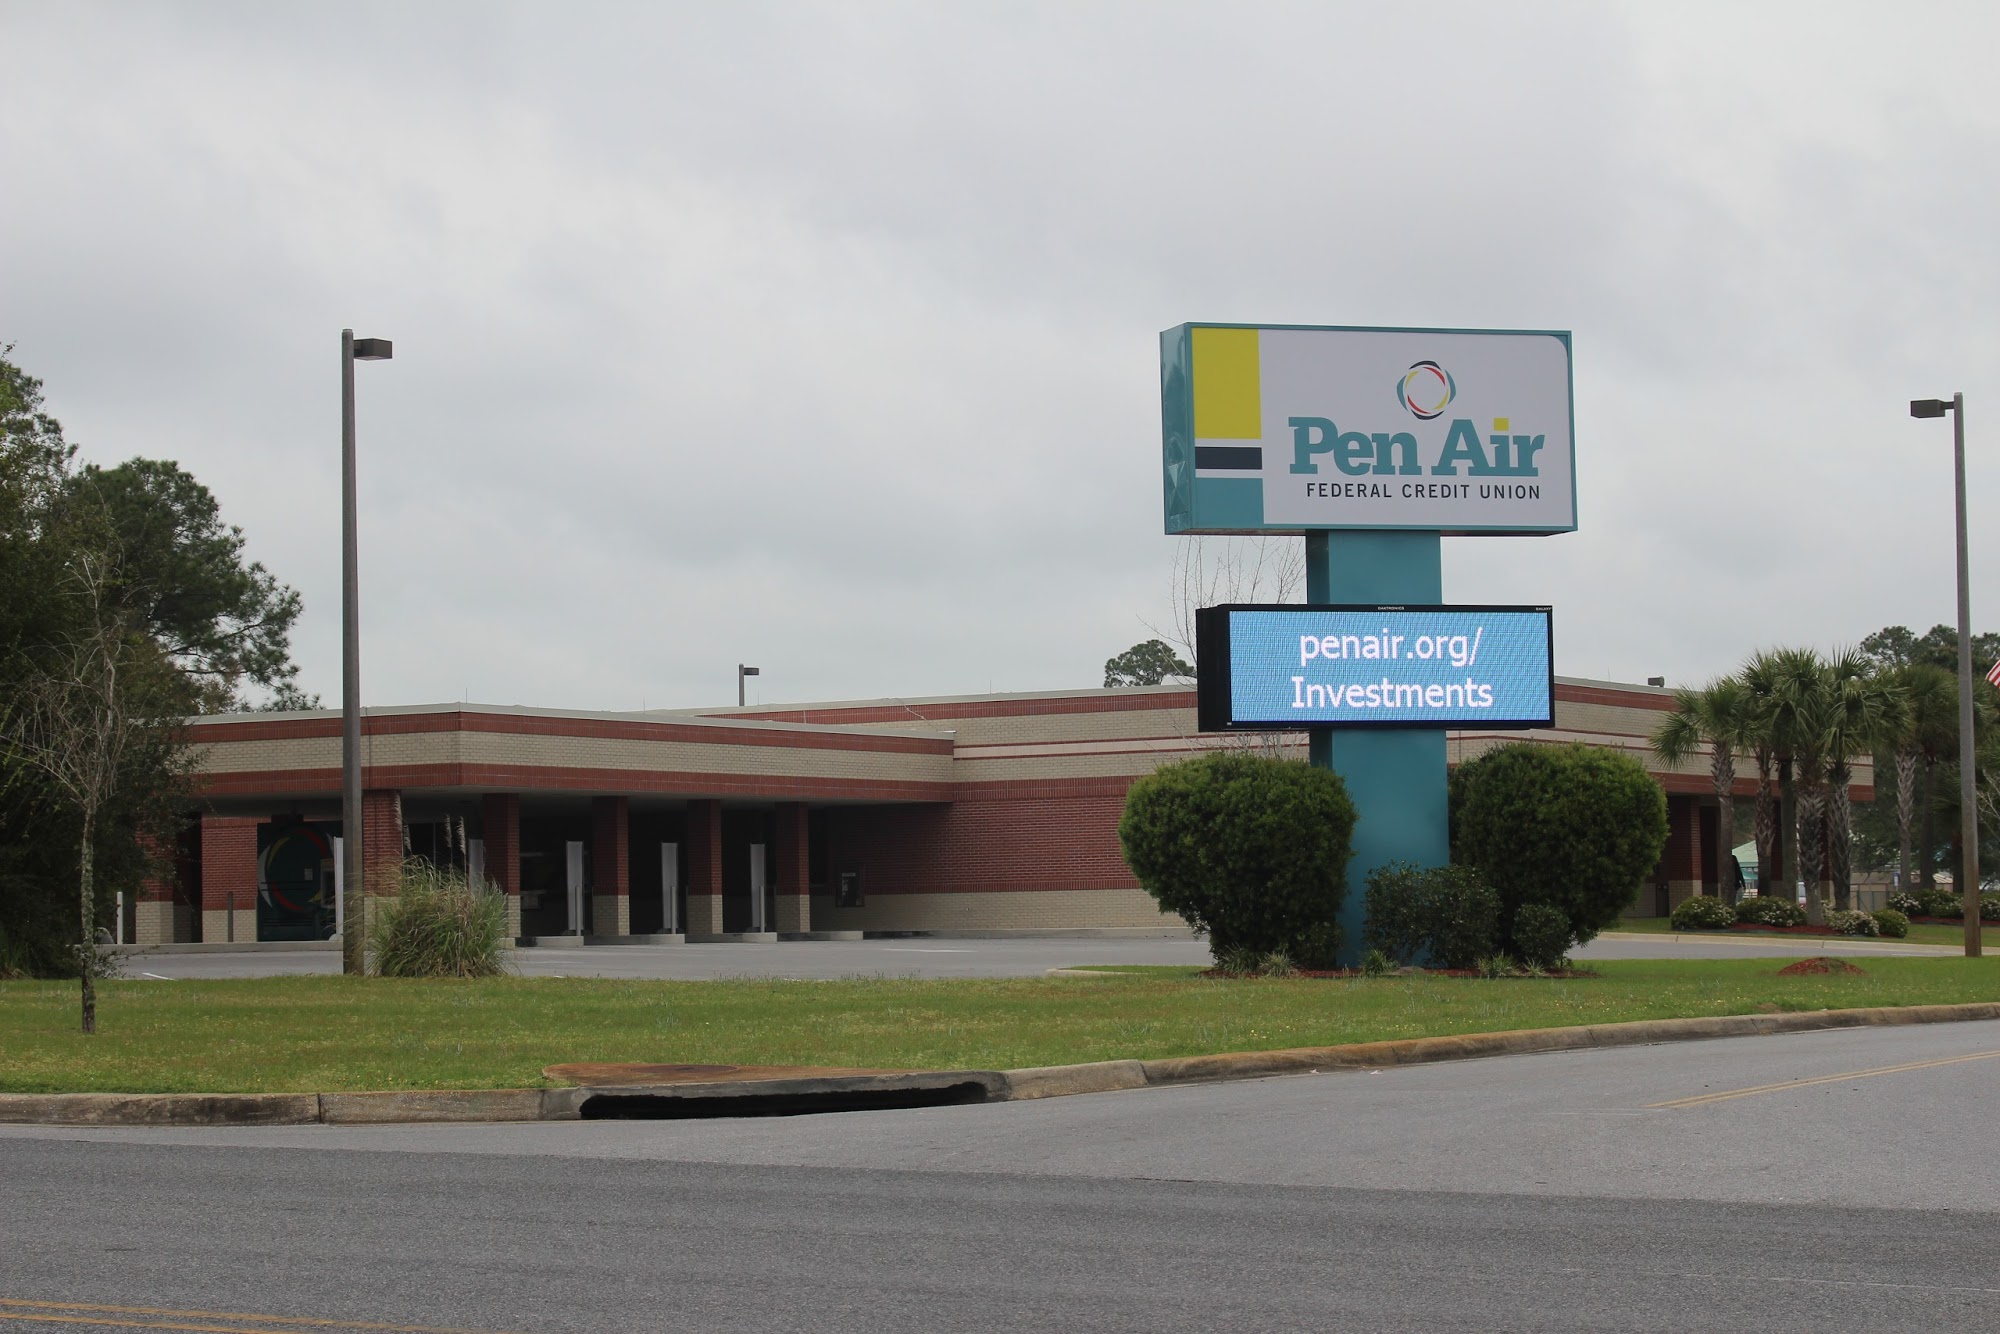 Pen Air Credit Union